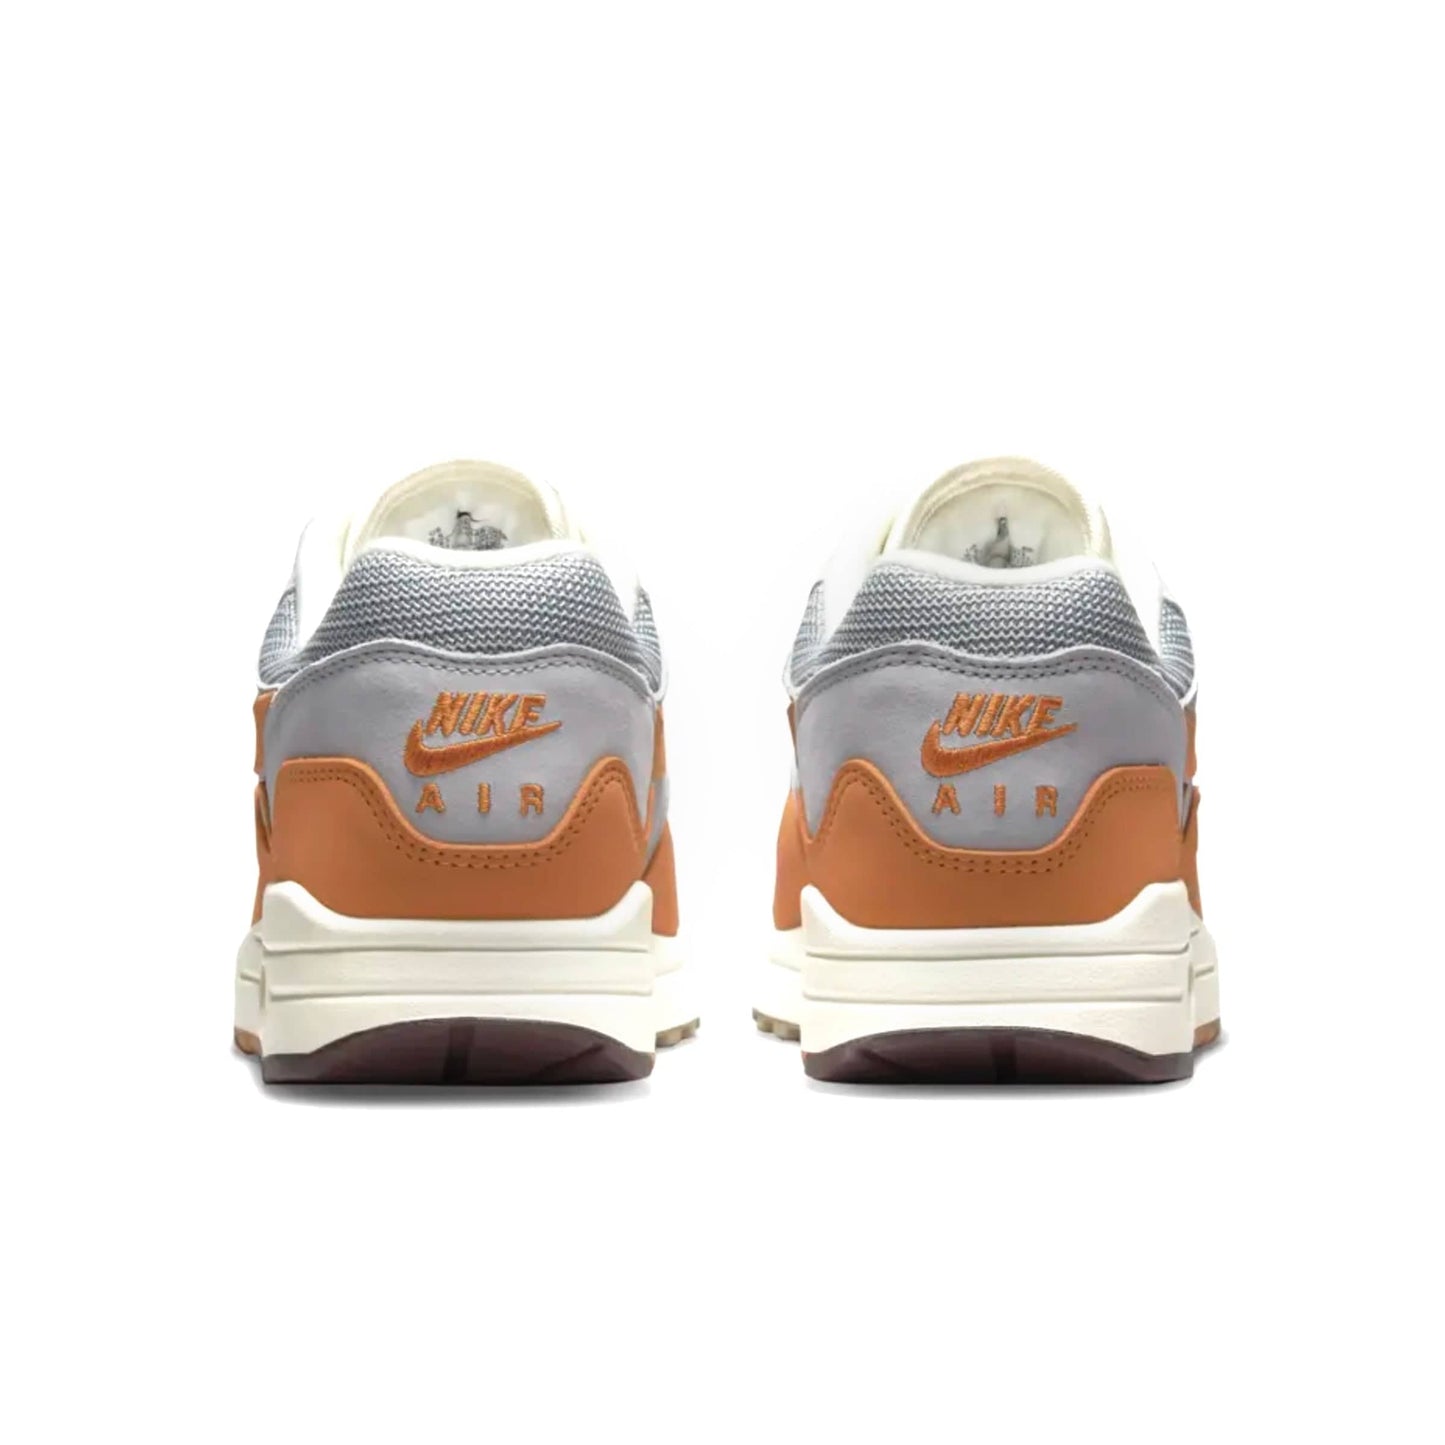 Nike Sneakers AIR MAX 1 PATTA